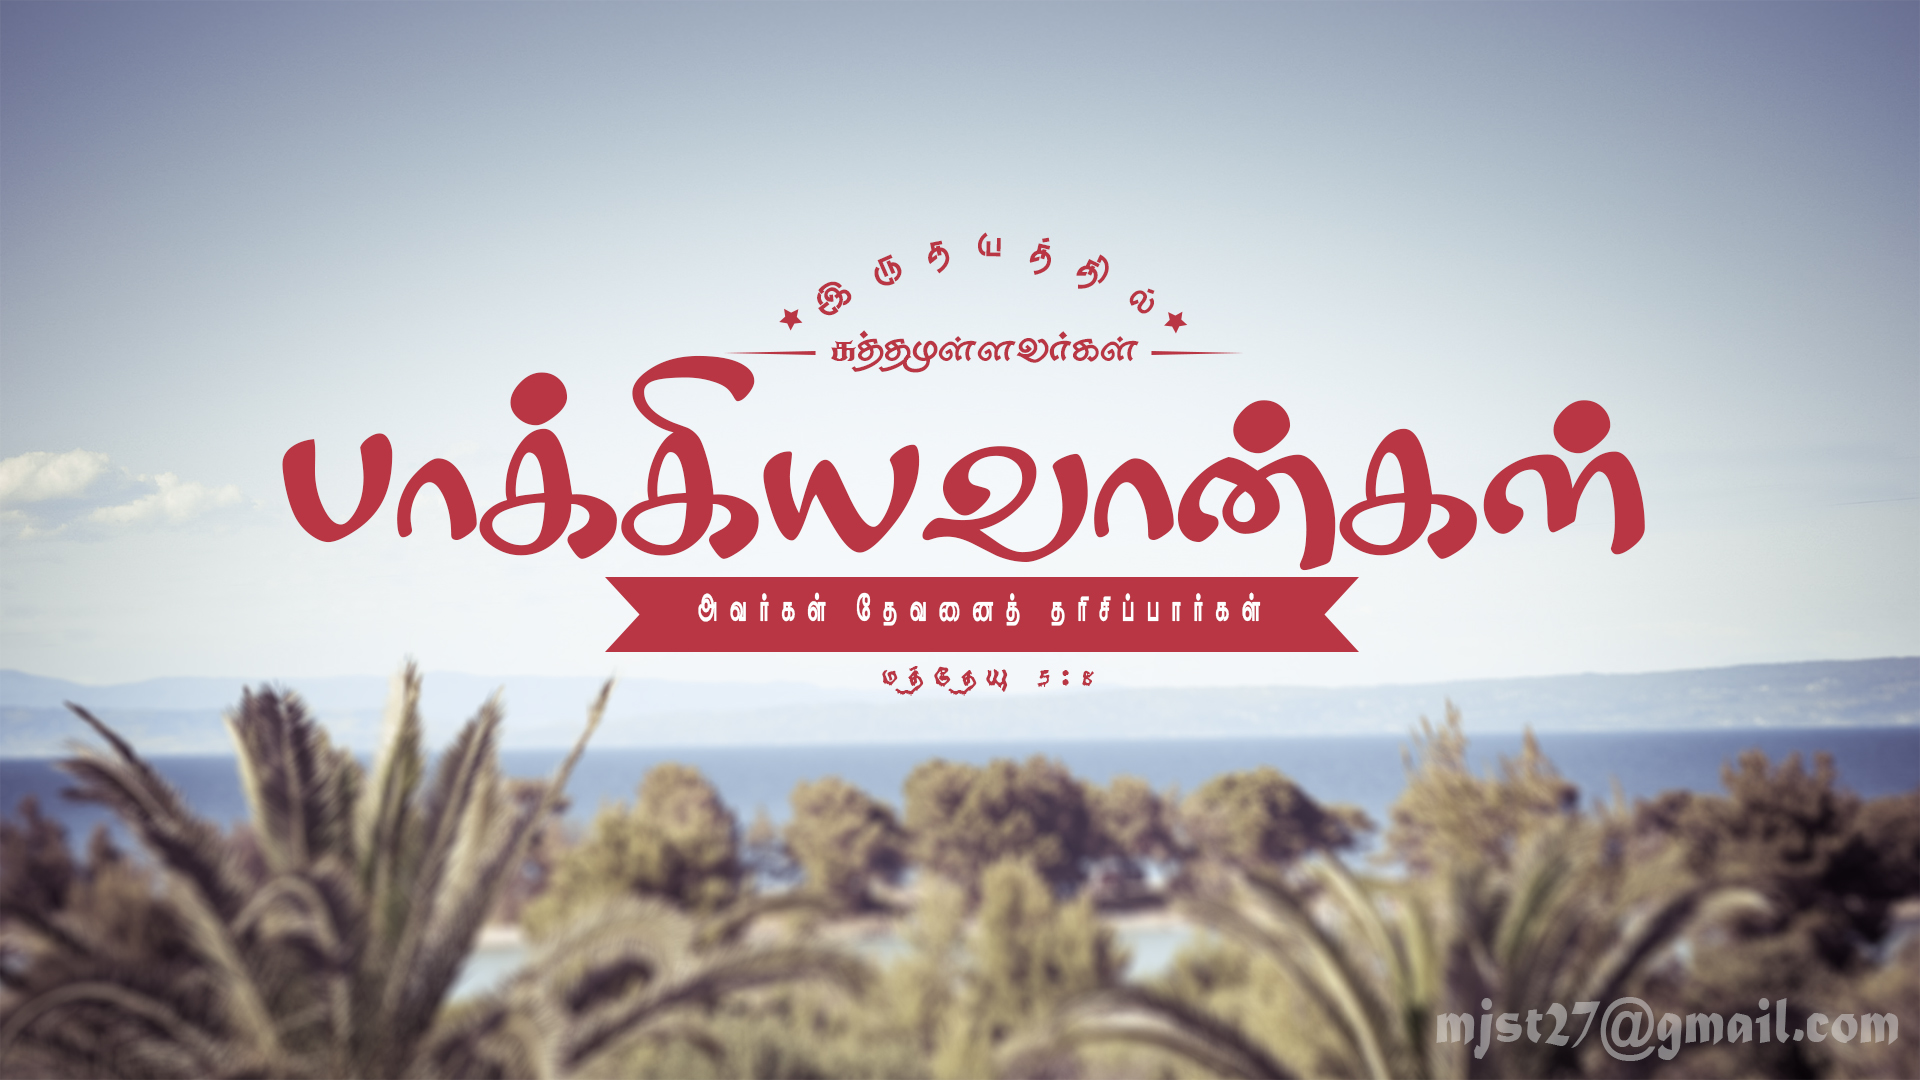 Download Tamil bible verses wallpaper for desktop